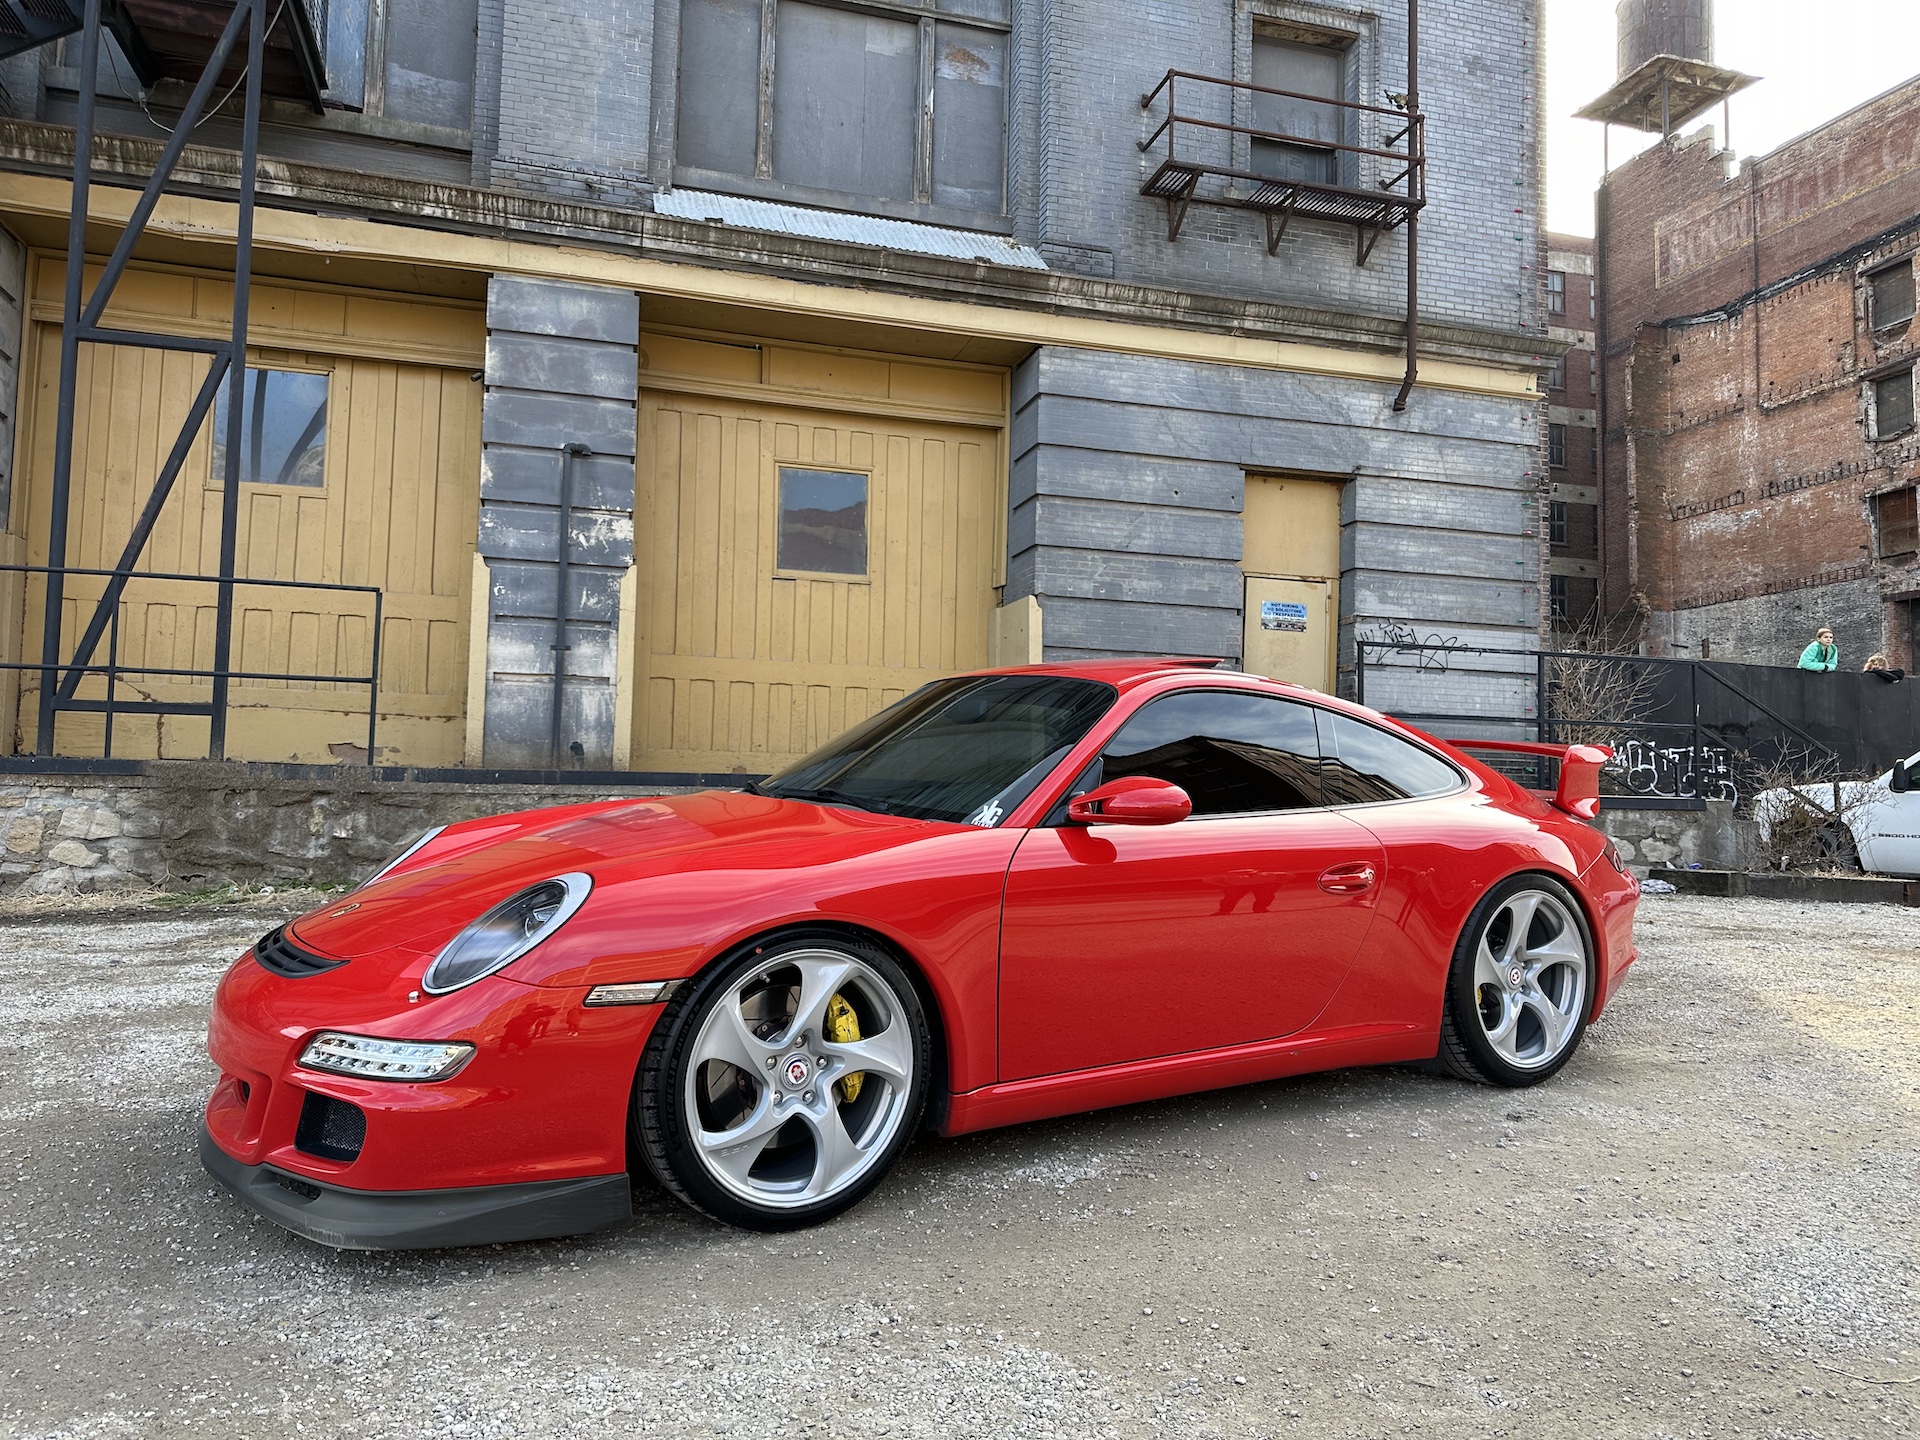  Porsche 911 with 